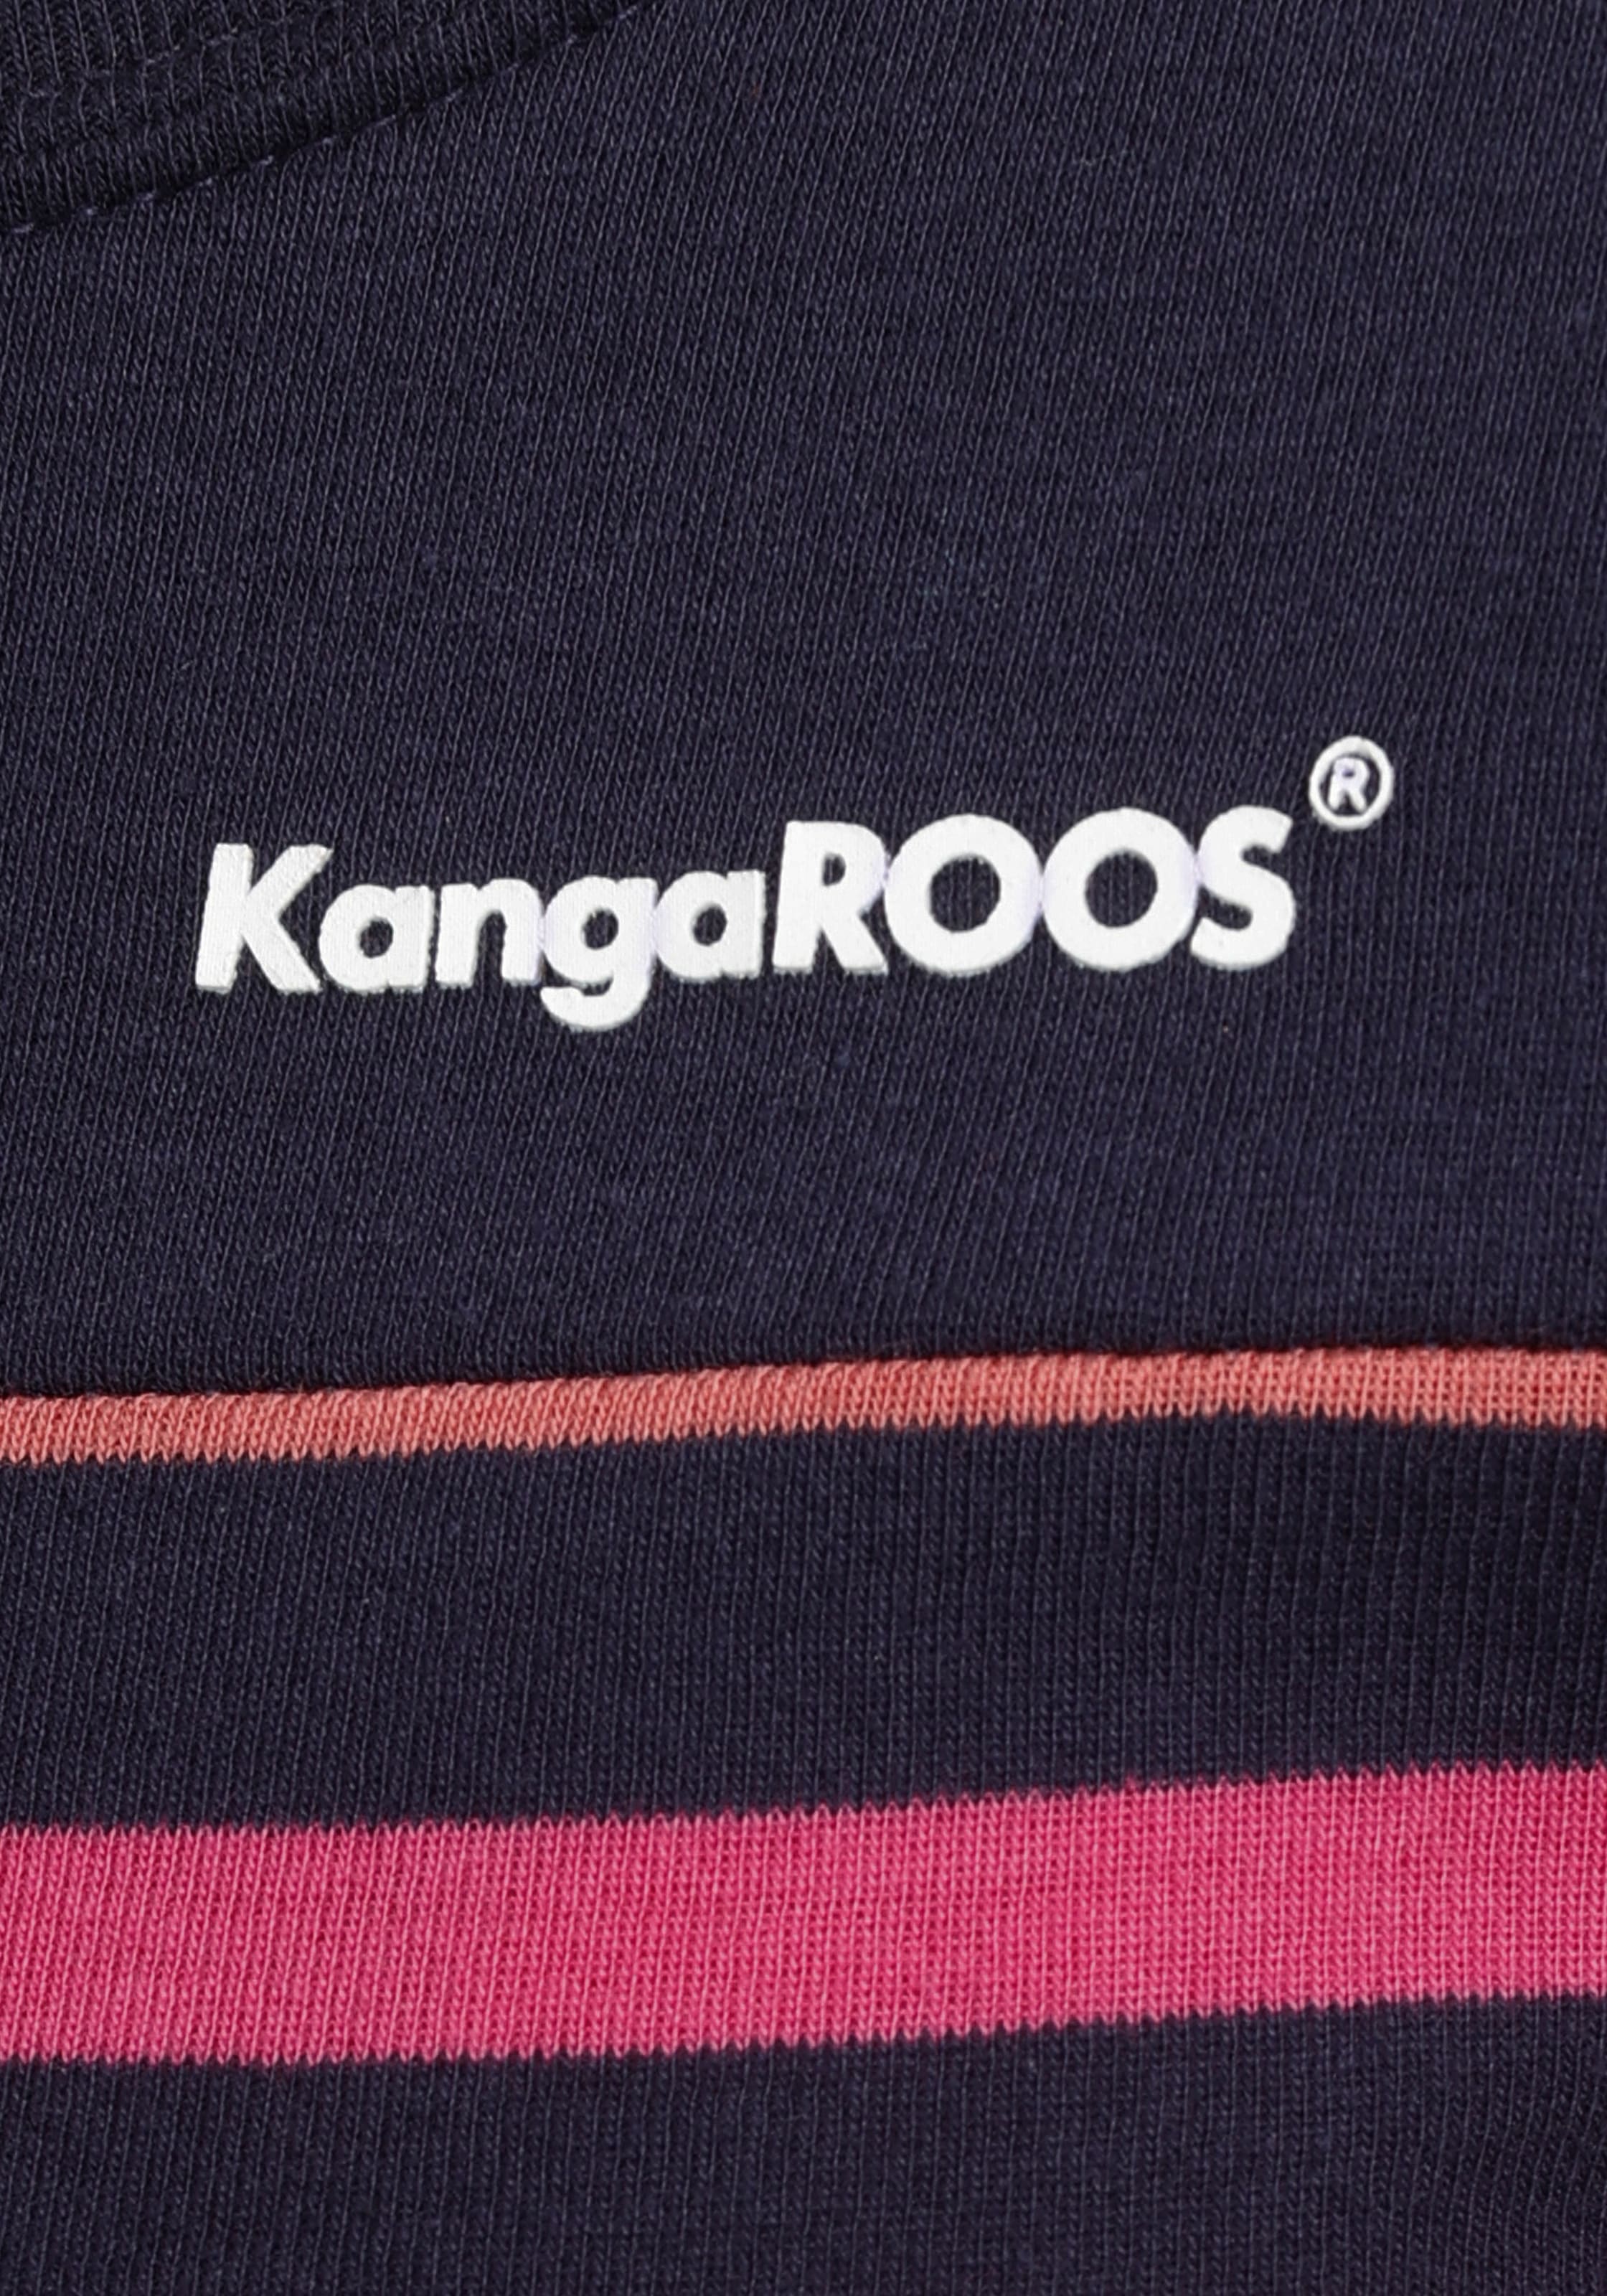 Steifen im mit Langarmshirt, KangaROOS bestellen tollen Farbverlauf